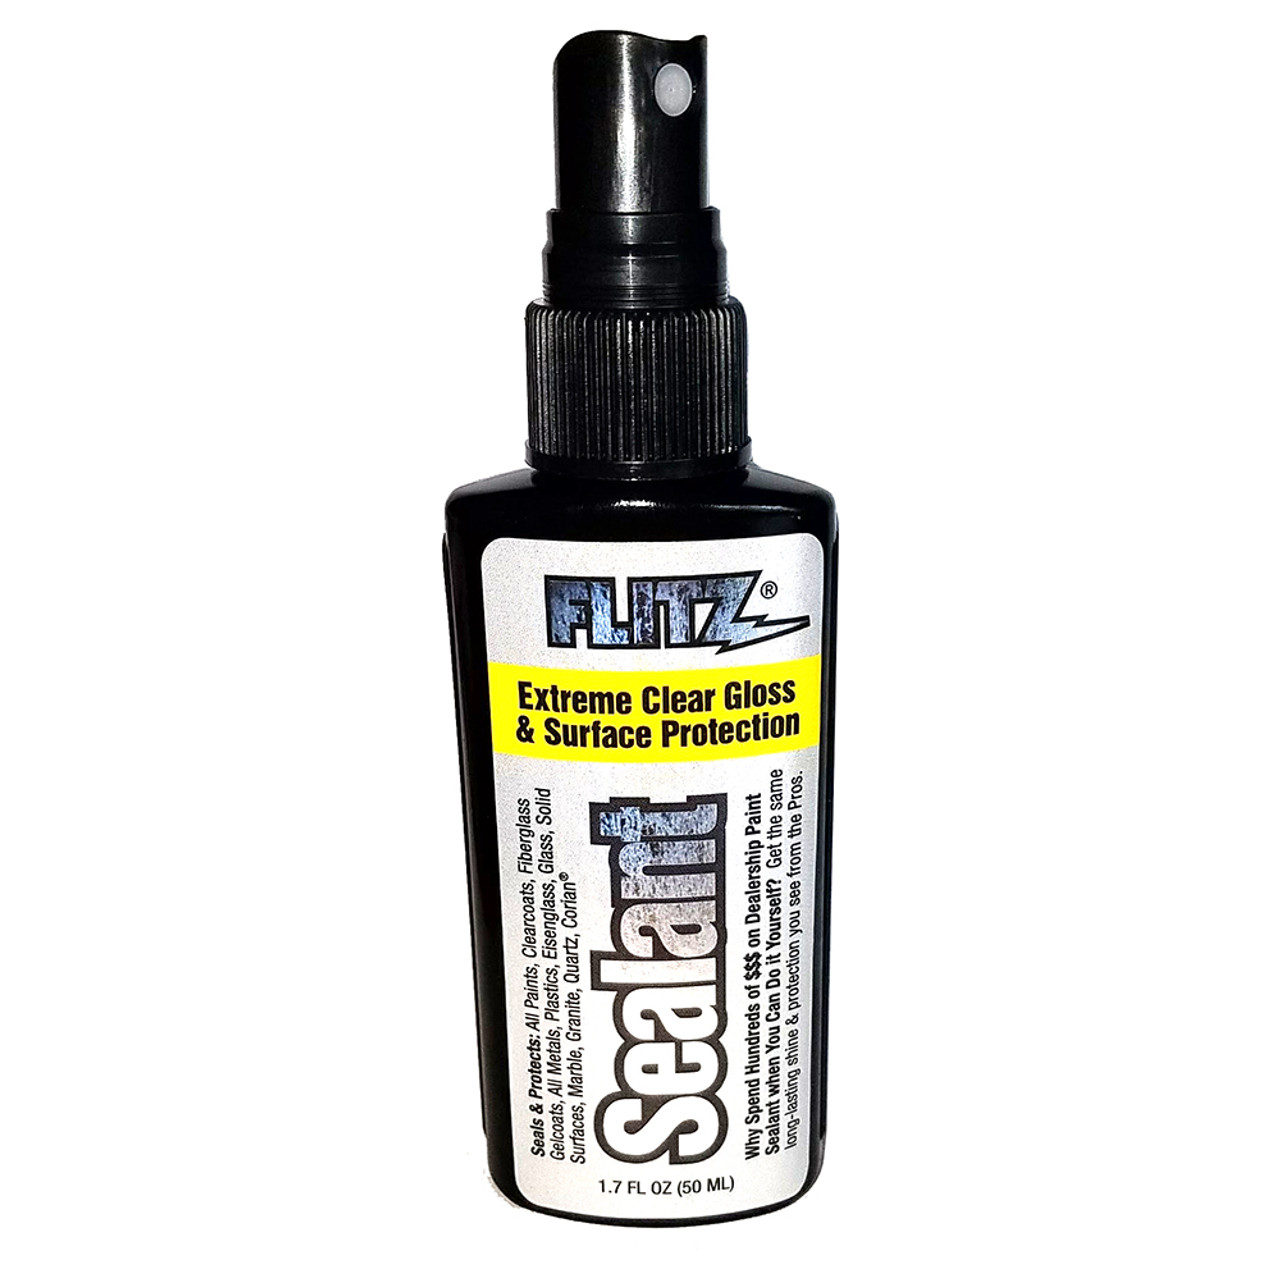 Spray Sealant, Flitz Ceramic Sealant